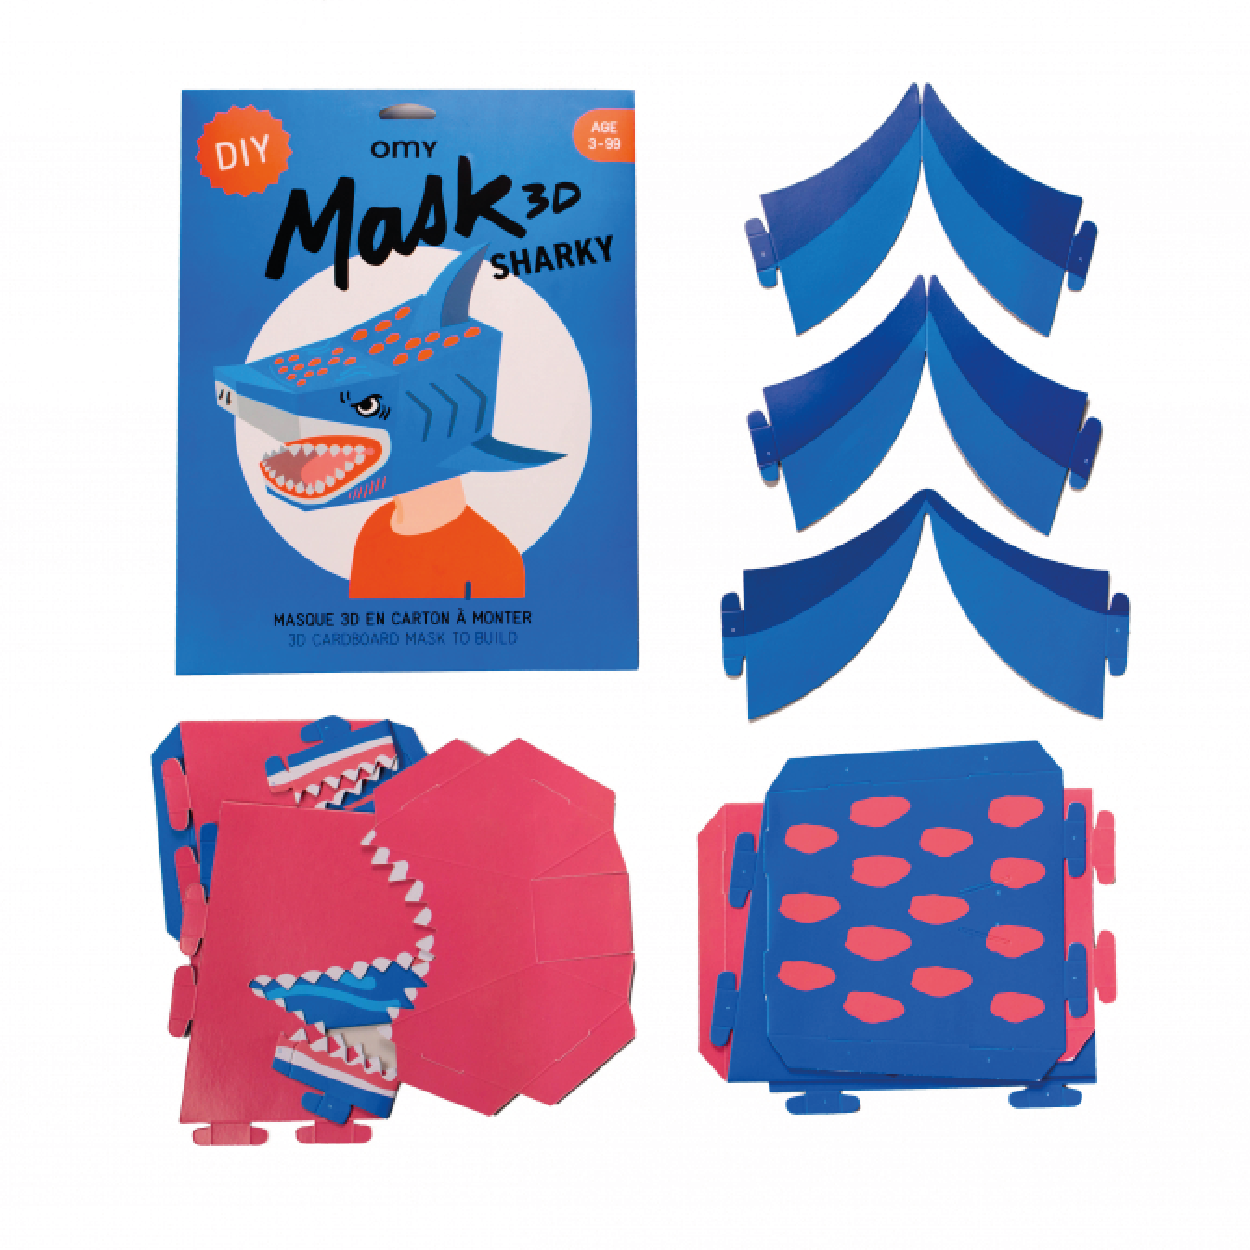 Sharky 3D Cardboard Mask